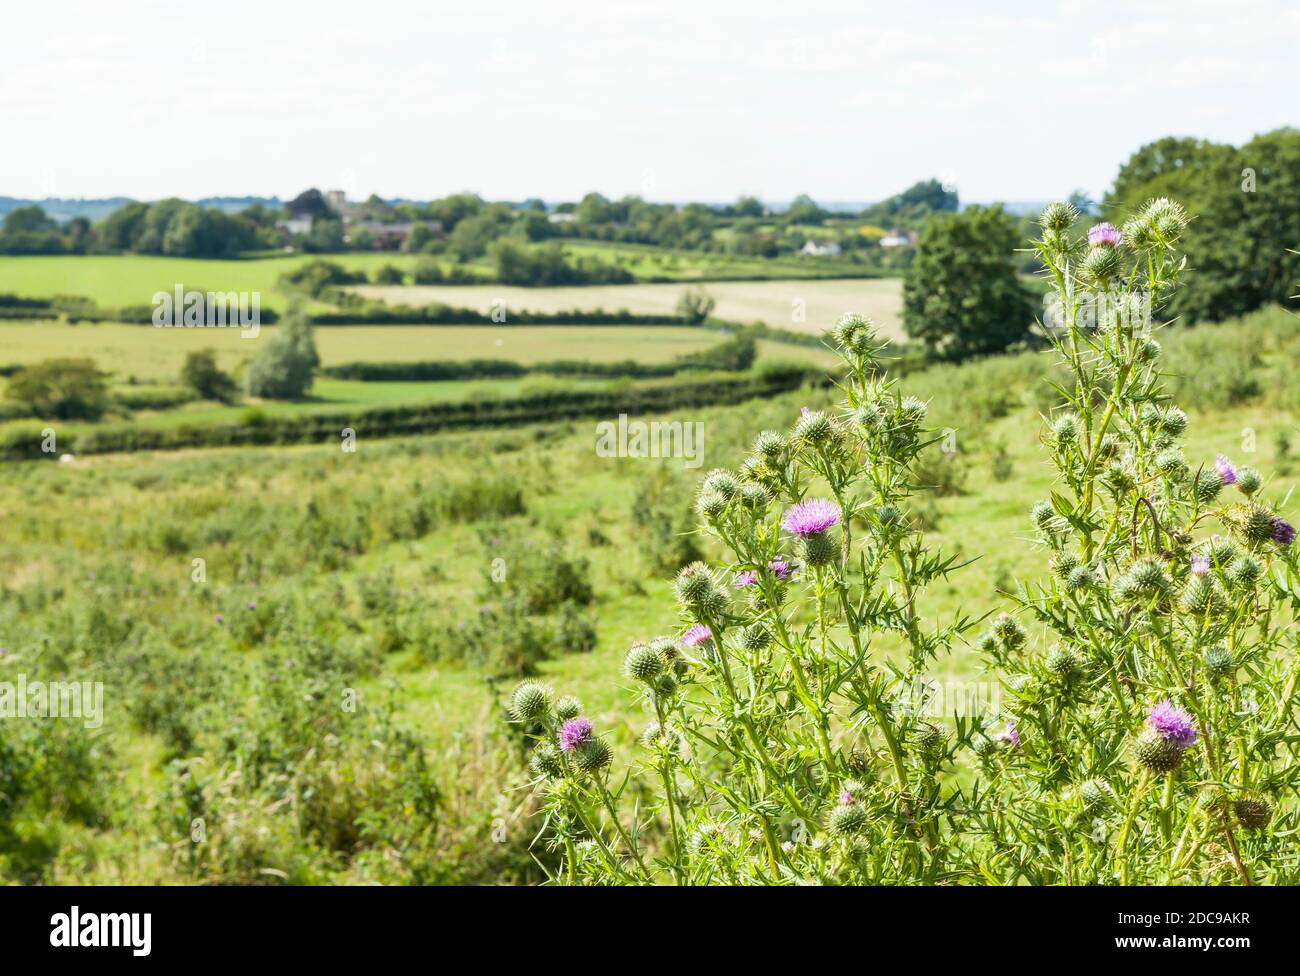 Feld der wilden Blumen (gewöhnliche Distel) in Buckinghamshire Countryside, Aylesbury Vale, Großbritannien Stockfoto